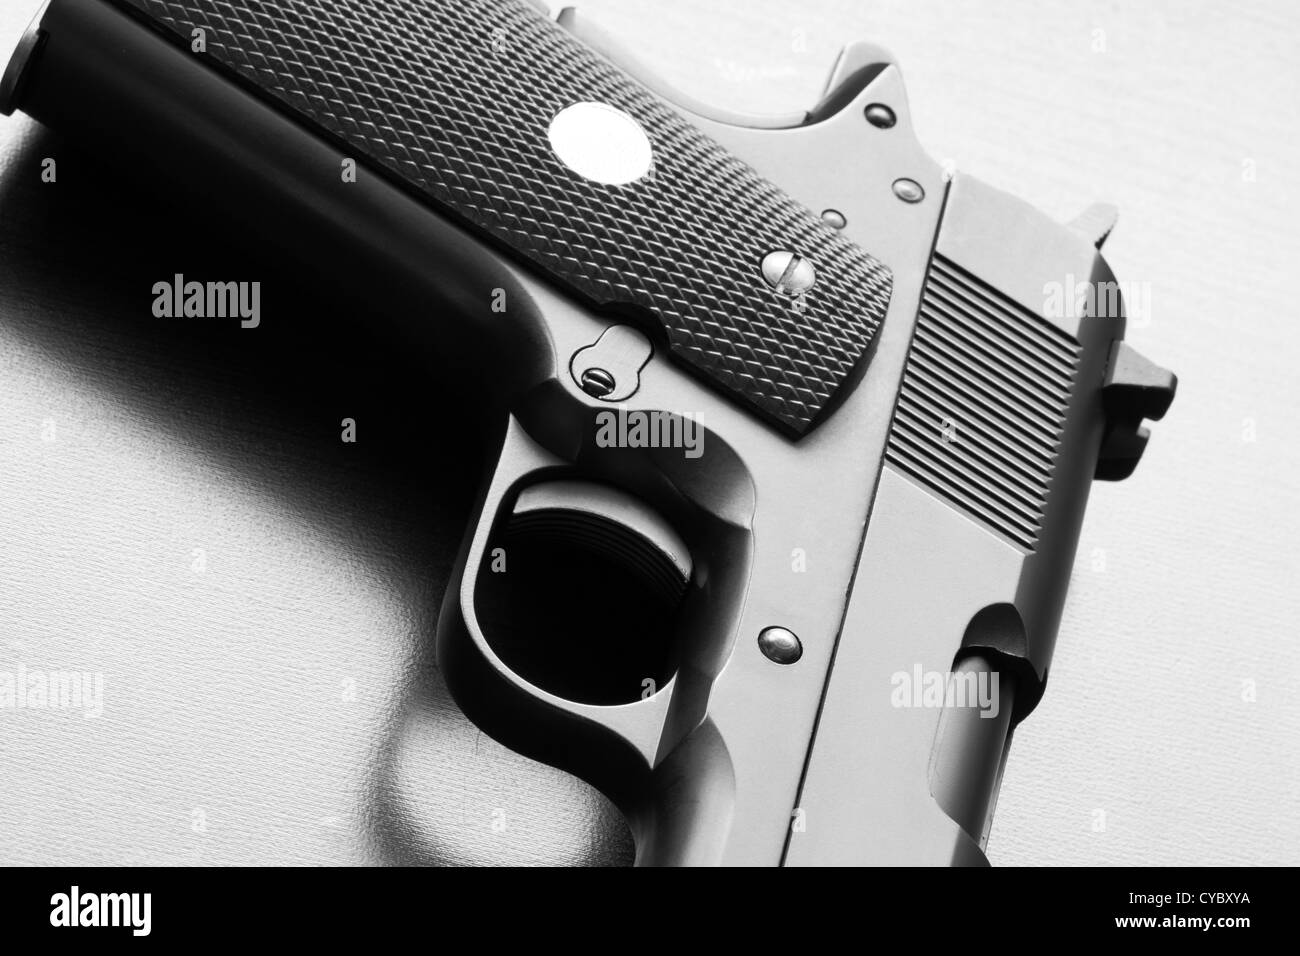 Le leggende di arma. Immagine in bianco e nero di 1911 serie pistola esercito su una superficie in legno di close-up. Studio shot. Foto Stock